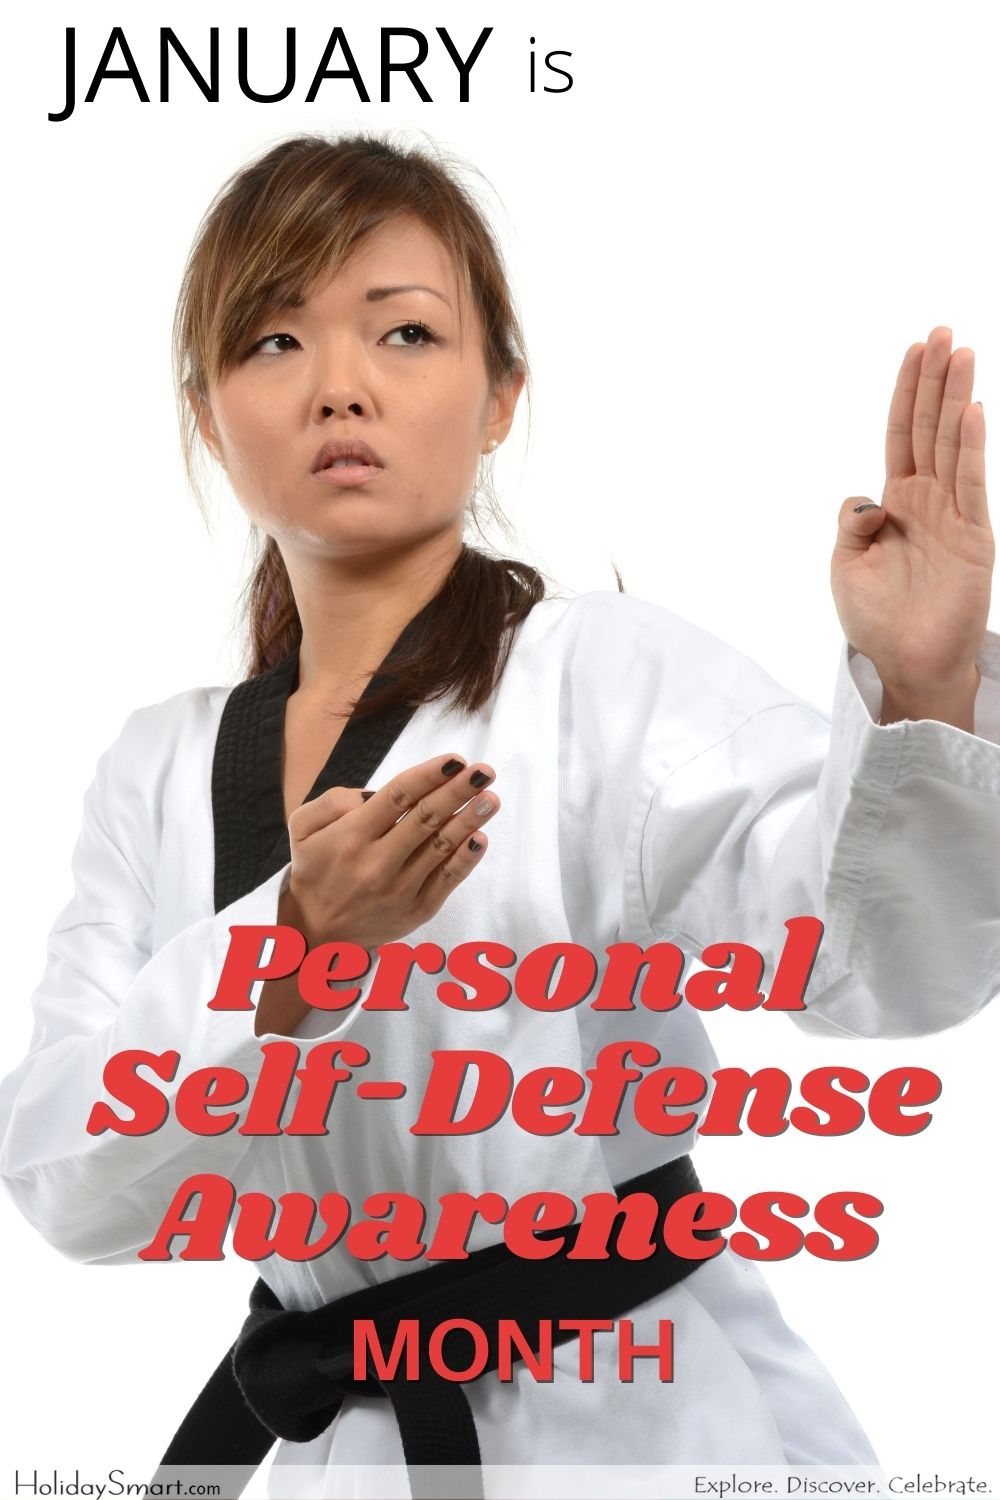 Personal Self-Defense Awareness Month